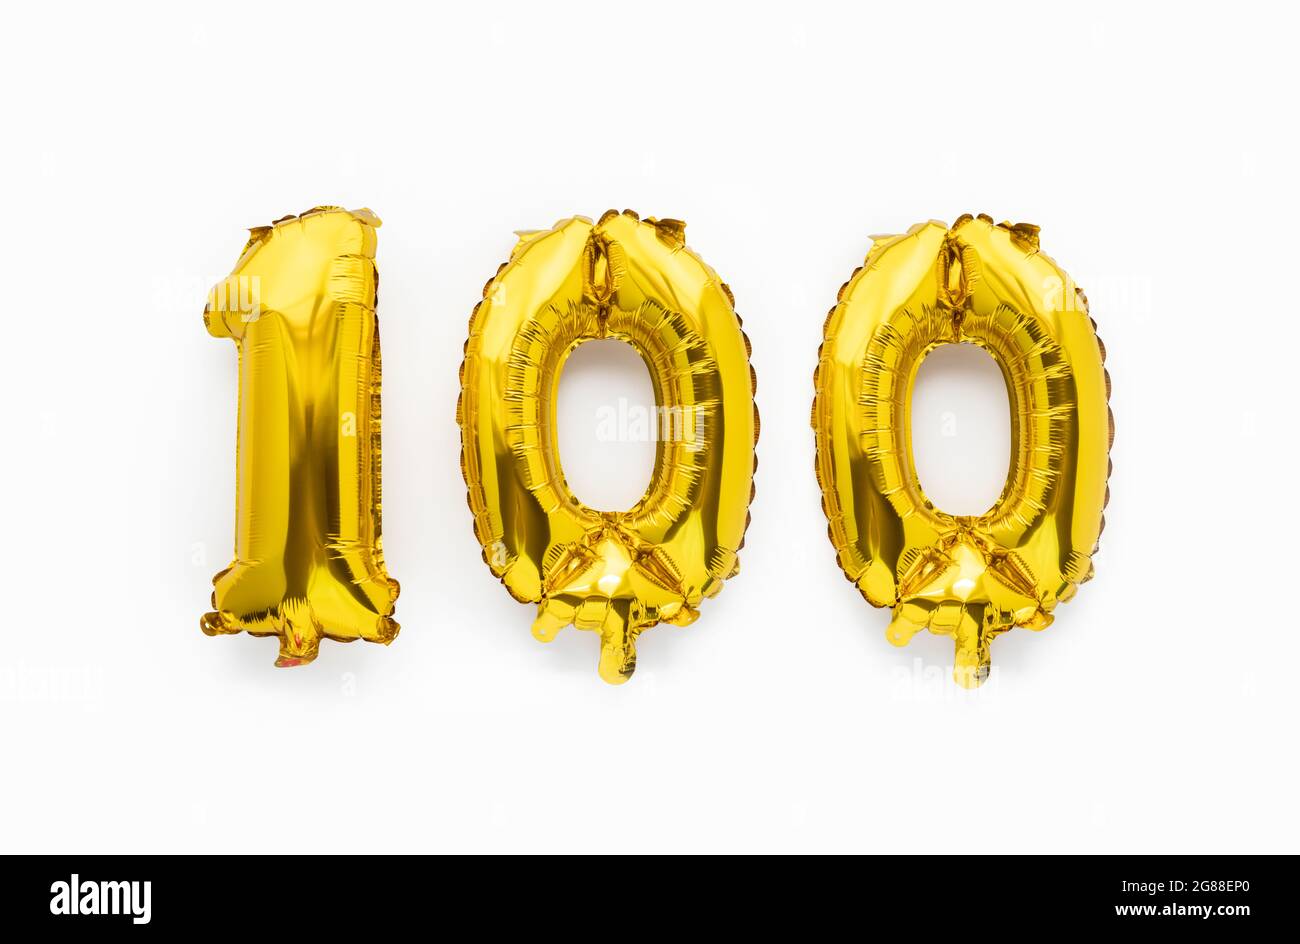 100+] Gold Foil Backgrounds